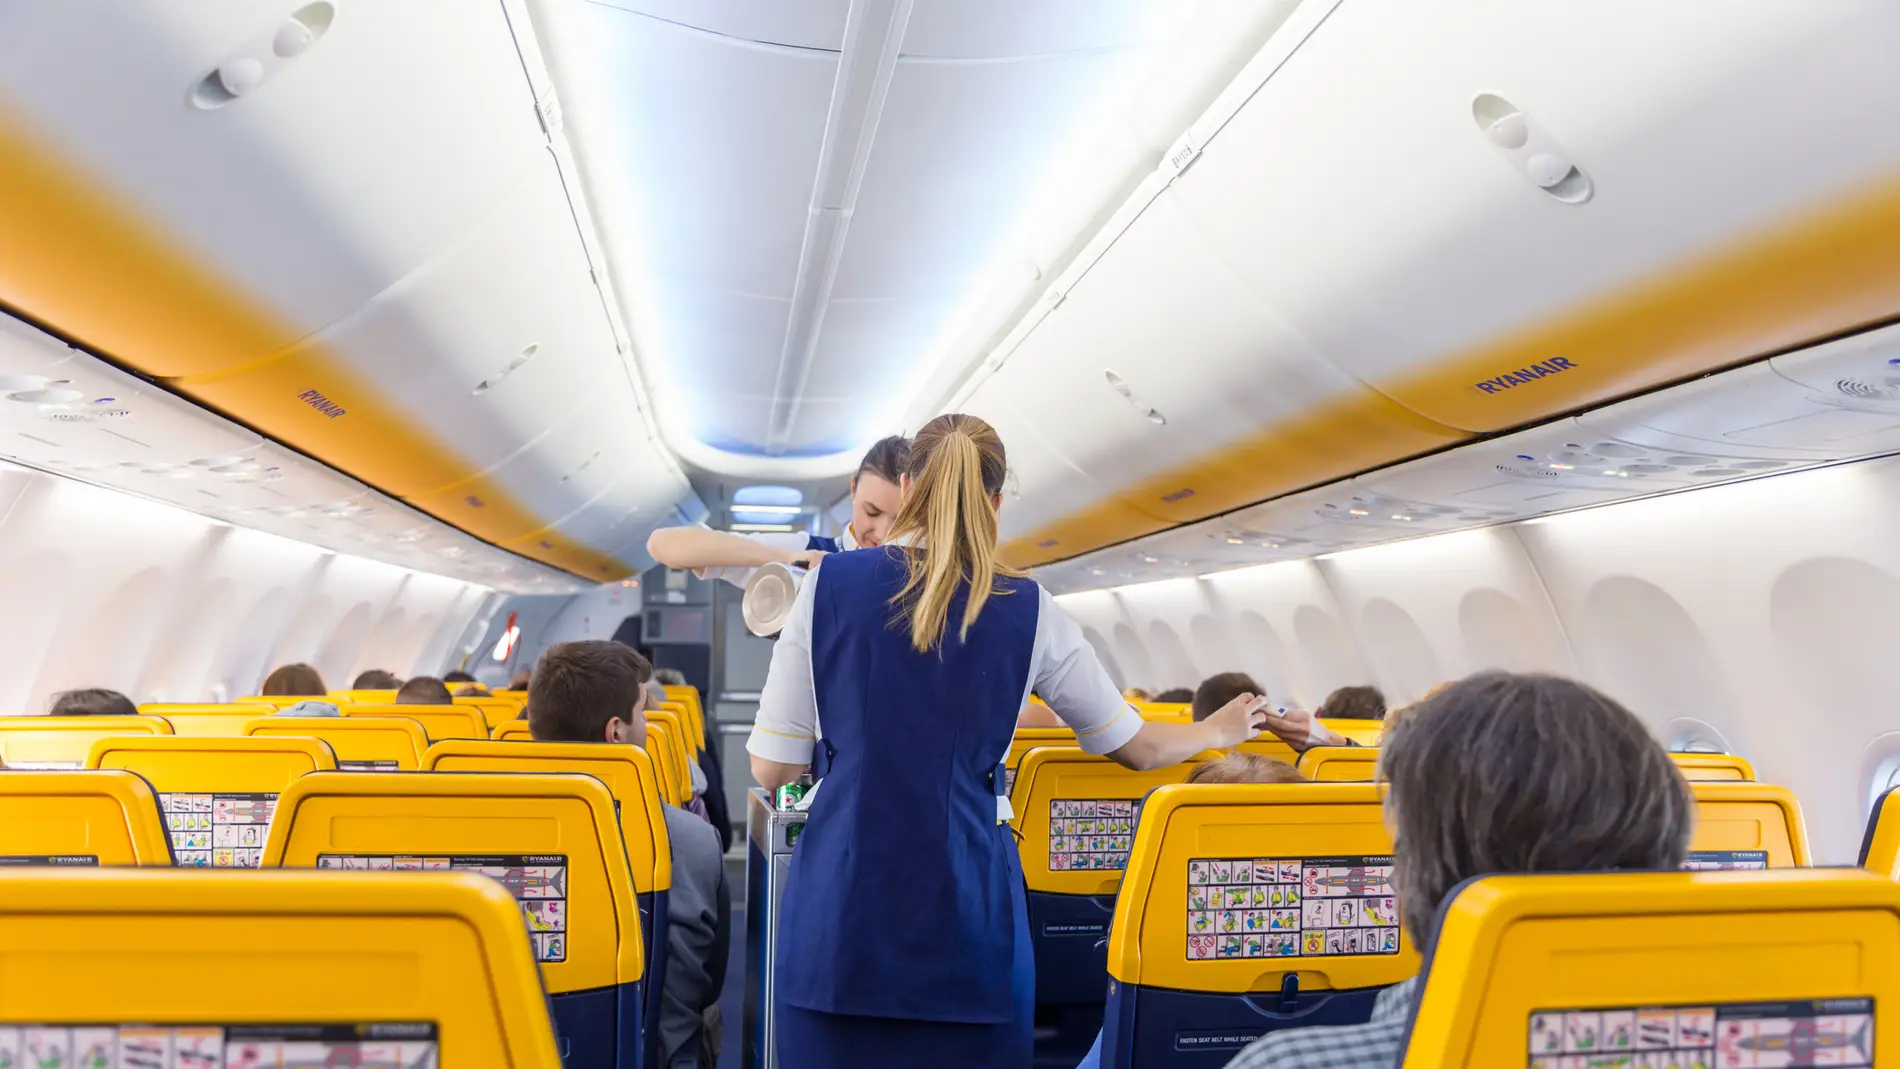 La sección 'secreta' de Ryanair para encontrar los vuelos más baratos